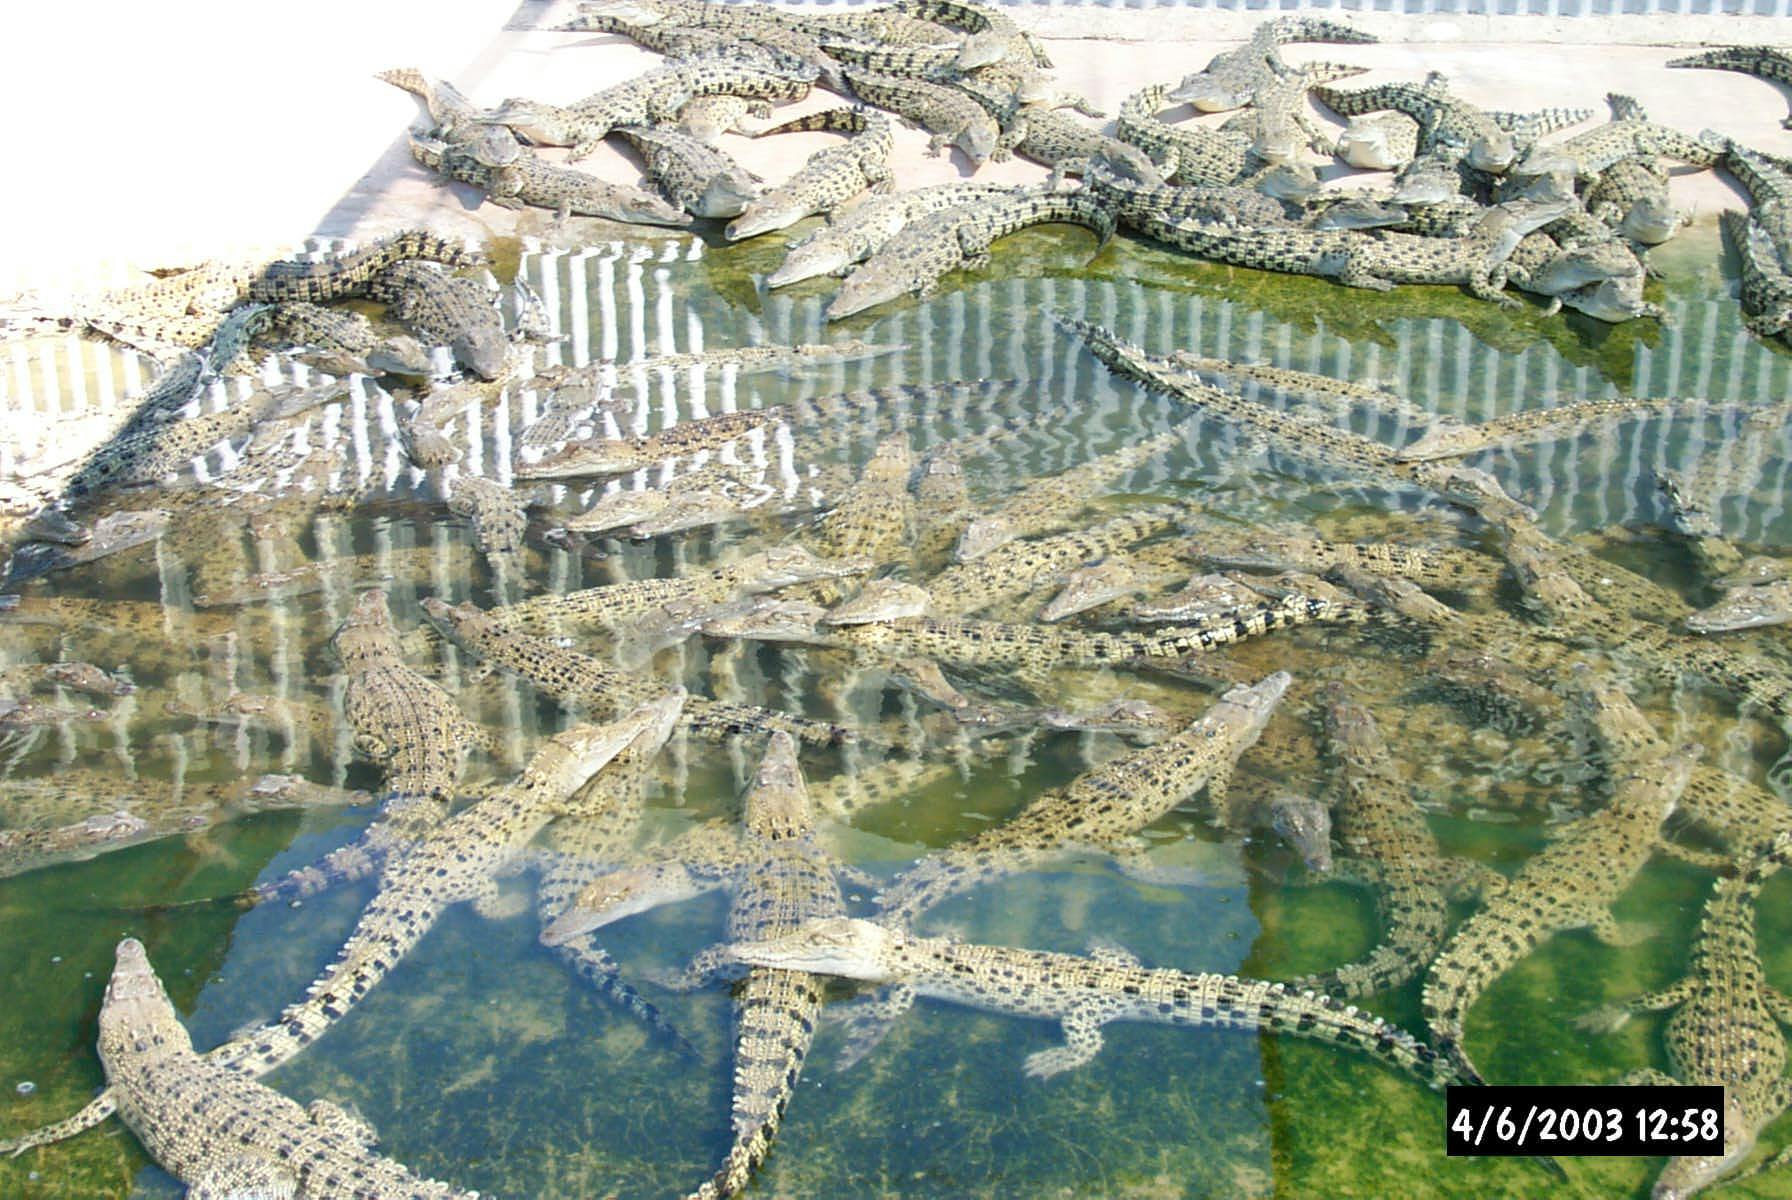 Crocodile farming